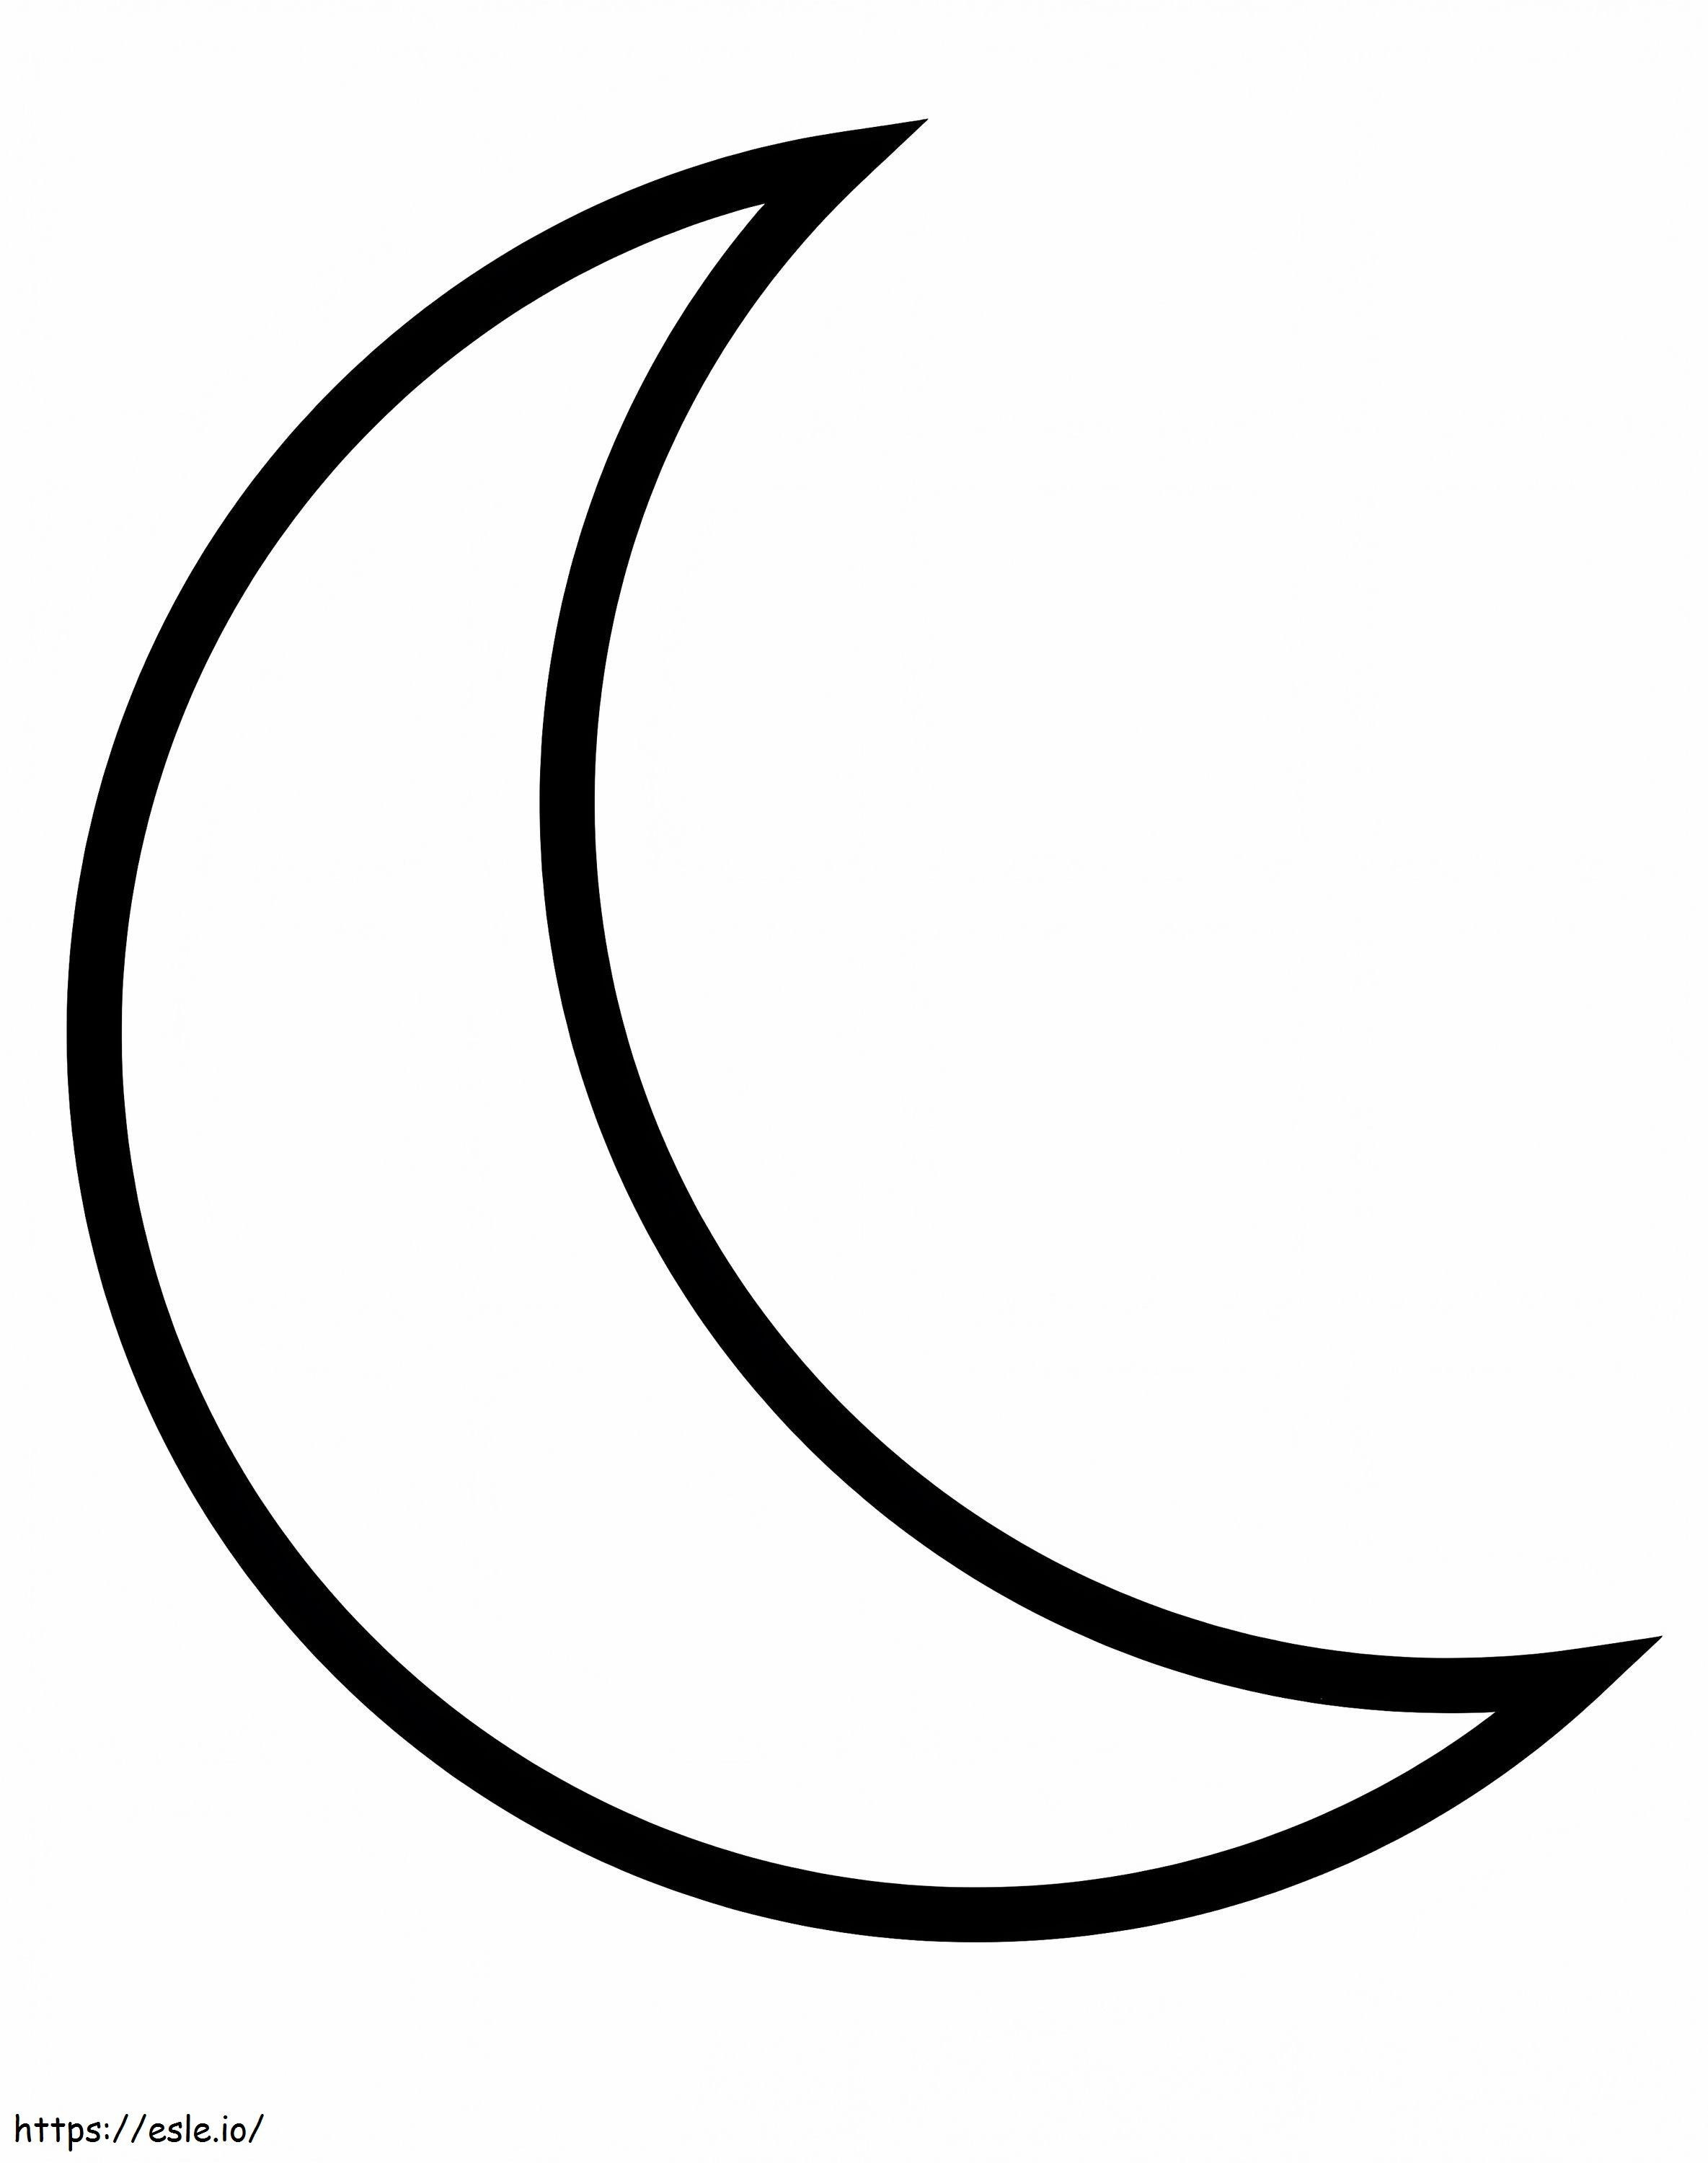 Einfache Mondsichel ausmalbilder